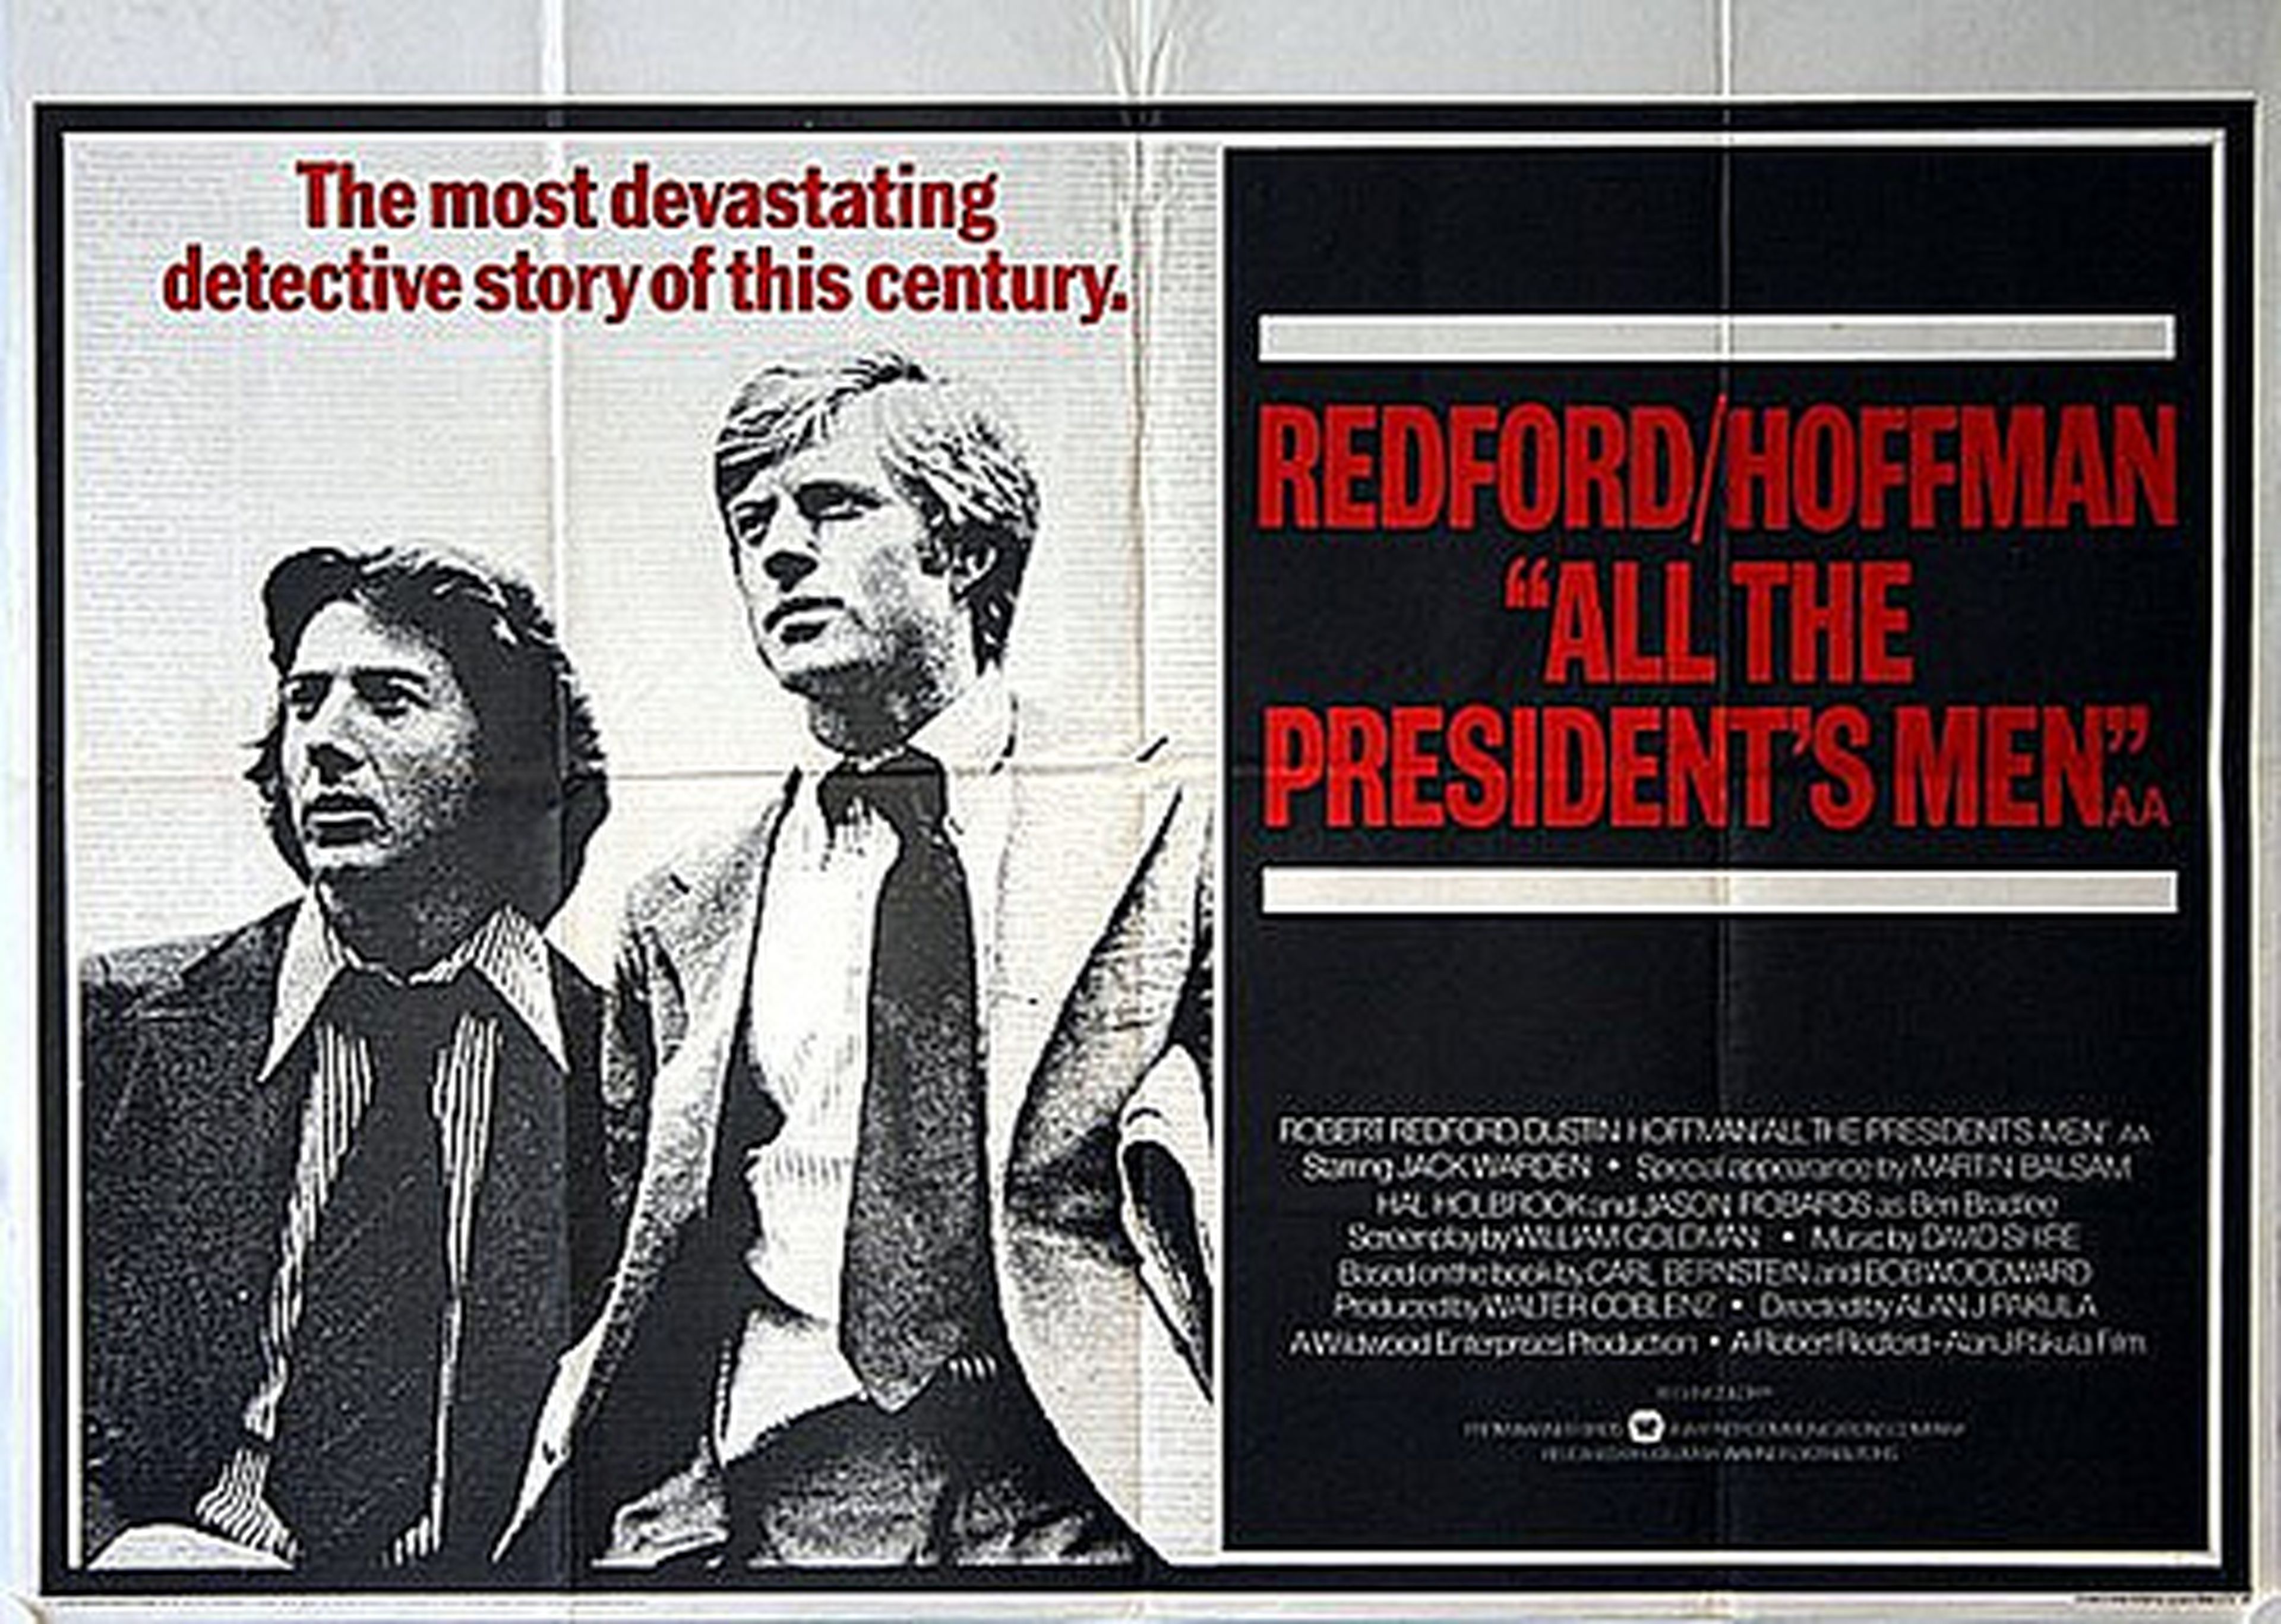 Todos los hombres del presidente (1976)